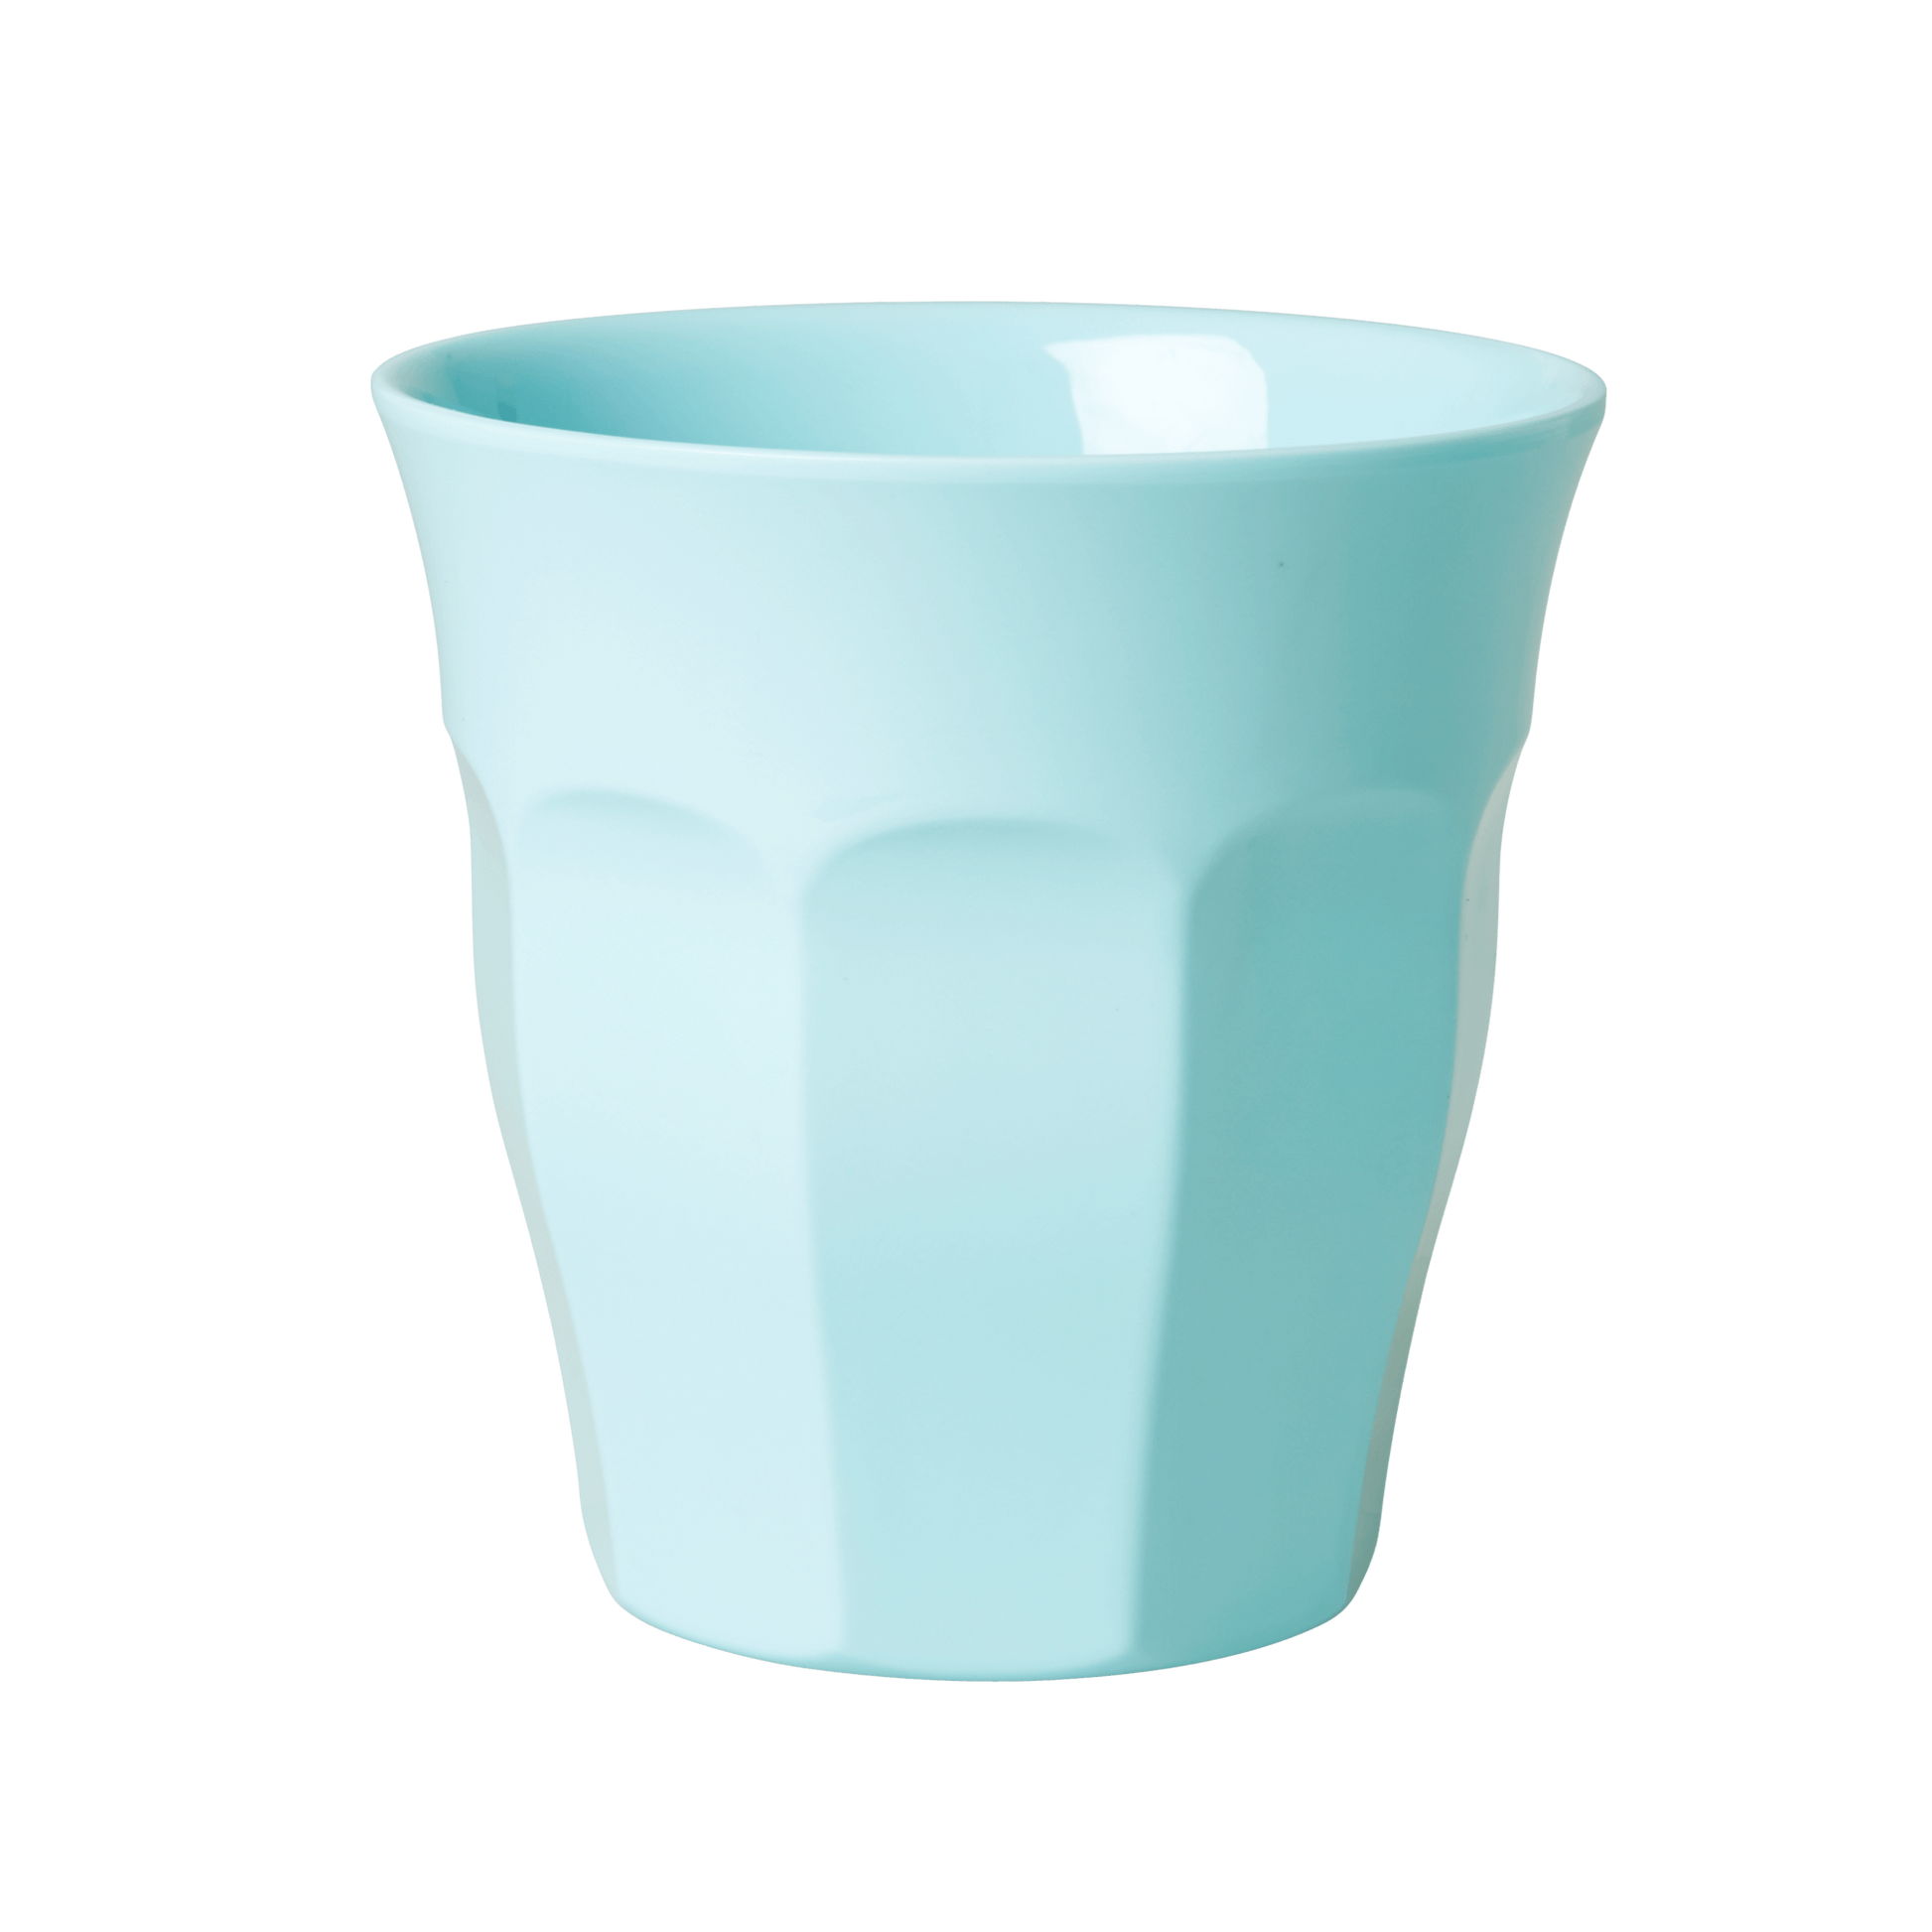 כוס גידי מלמין, כוס פלסטיק רב פעמית, כוסות מלמין, כוסות פלסטיק, RICE DK , כלי פלסטיק לפיקניק, כוס מלמין סופי